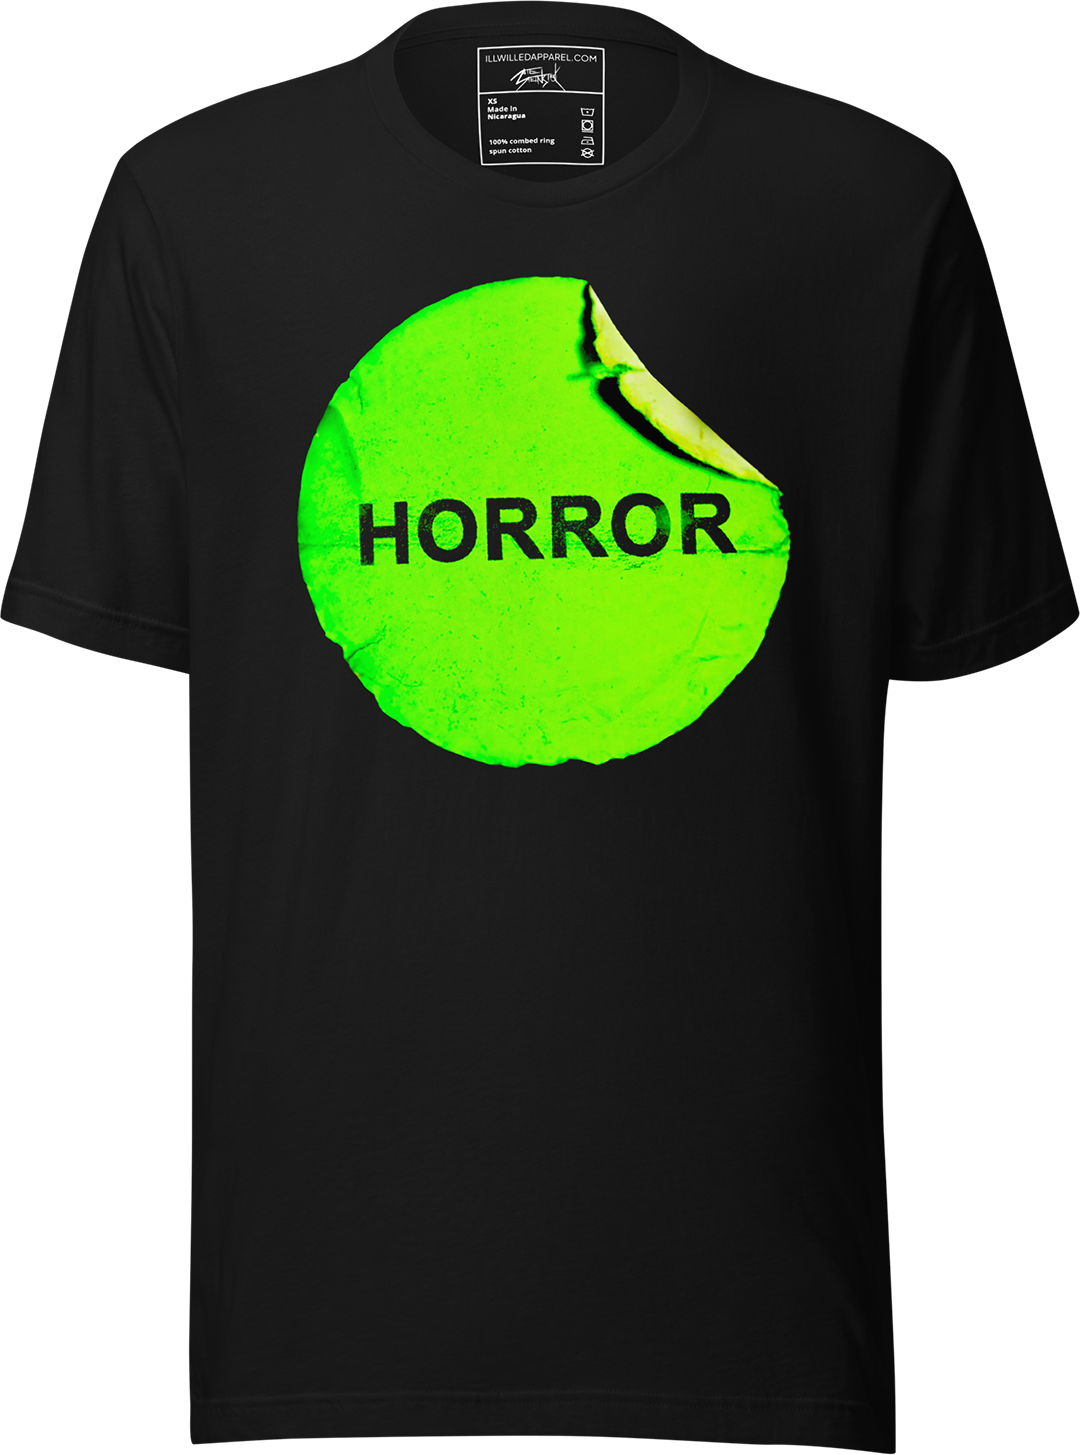 Retro VHS Horror Unisex T-Shirt, Color: Black, Size: L